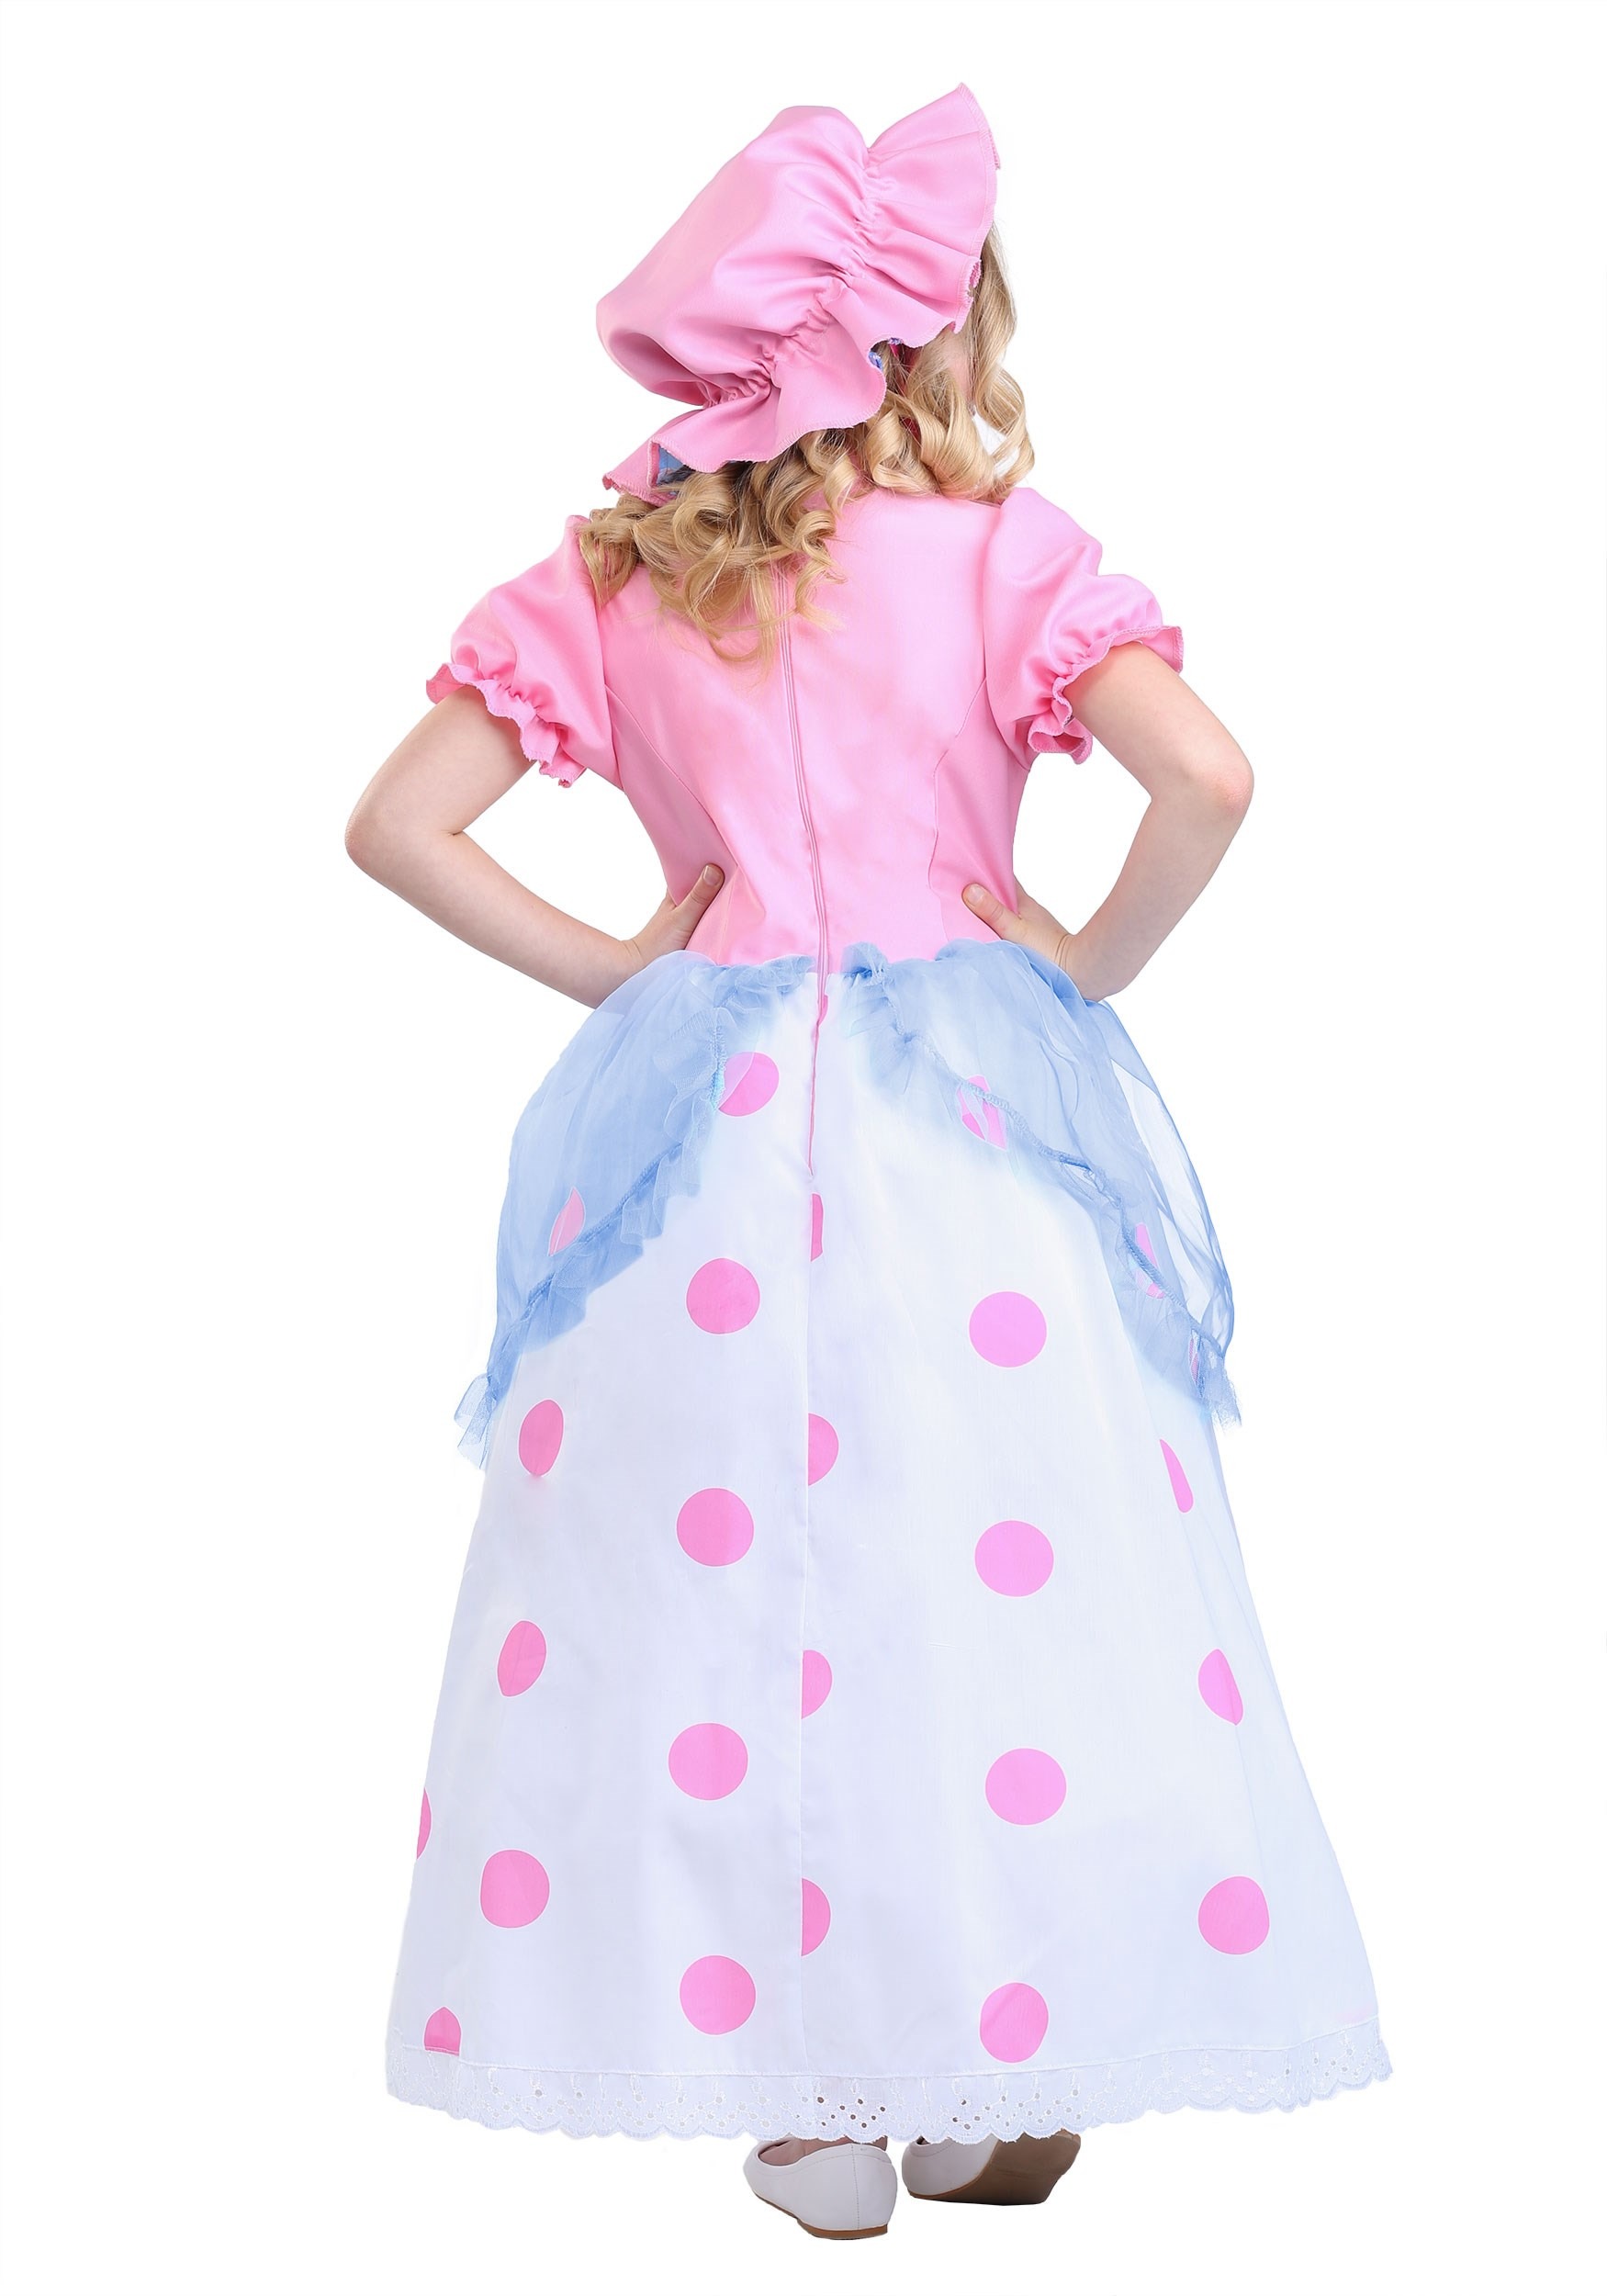 Little Bo Peep Costume For Girls